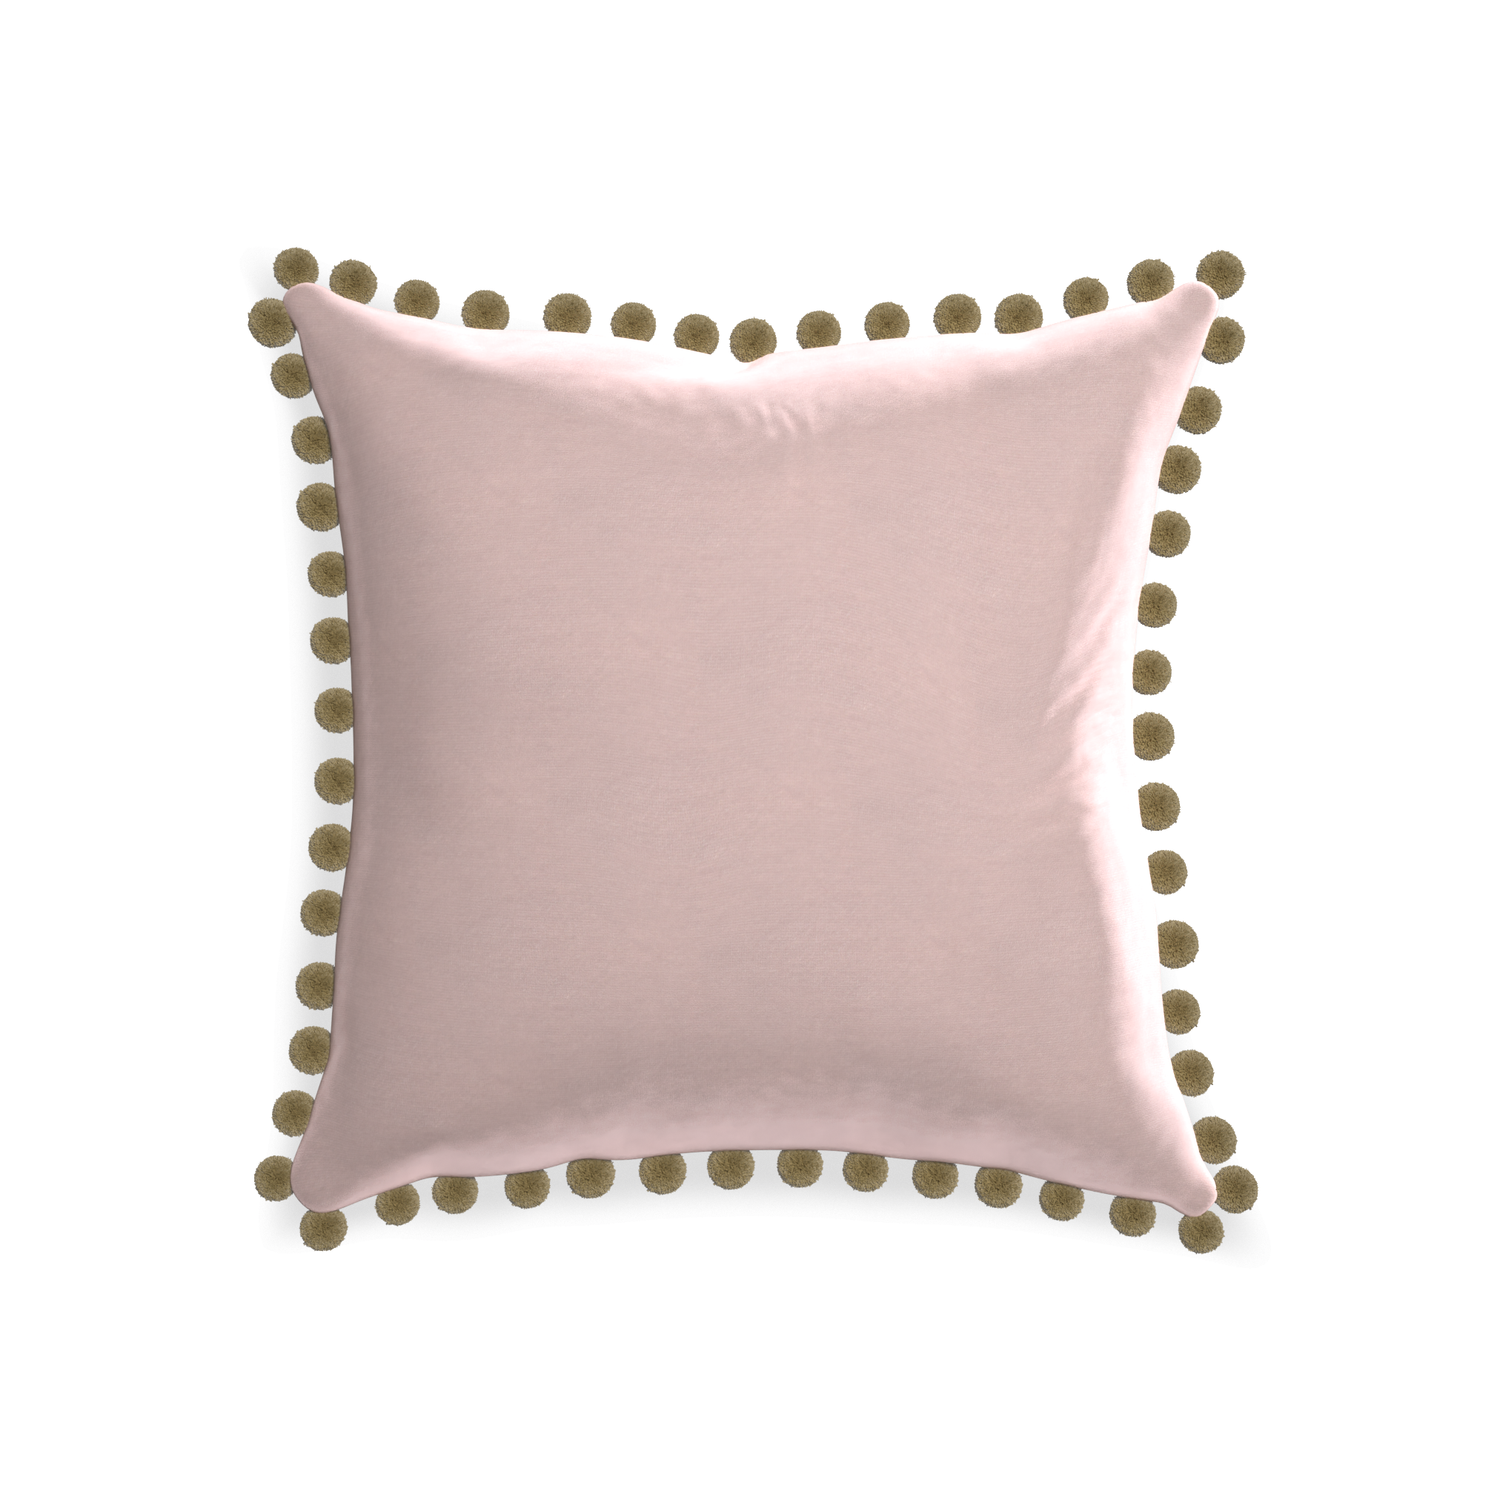 20-square rose velvet custom pillow with olive pom pom on white background